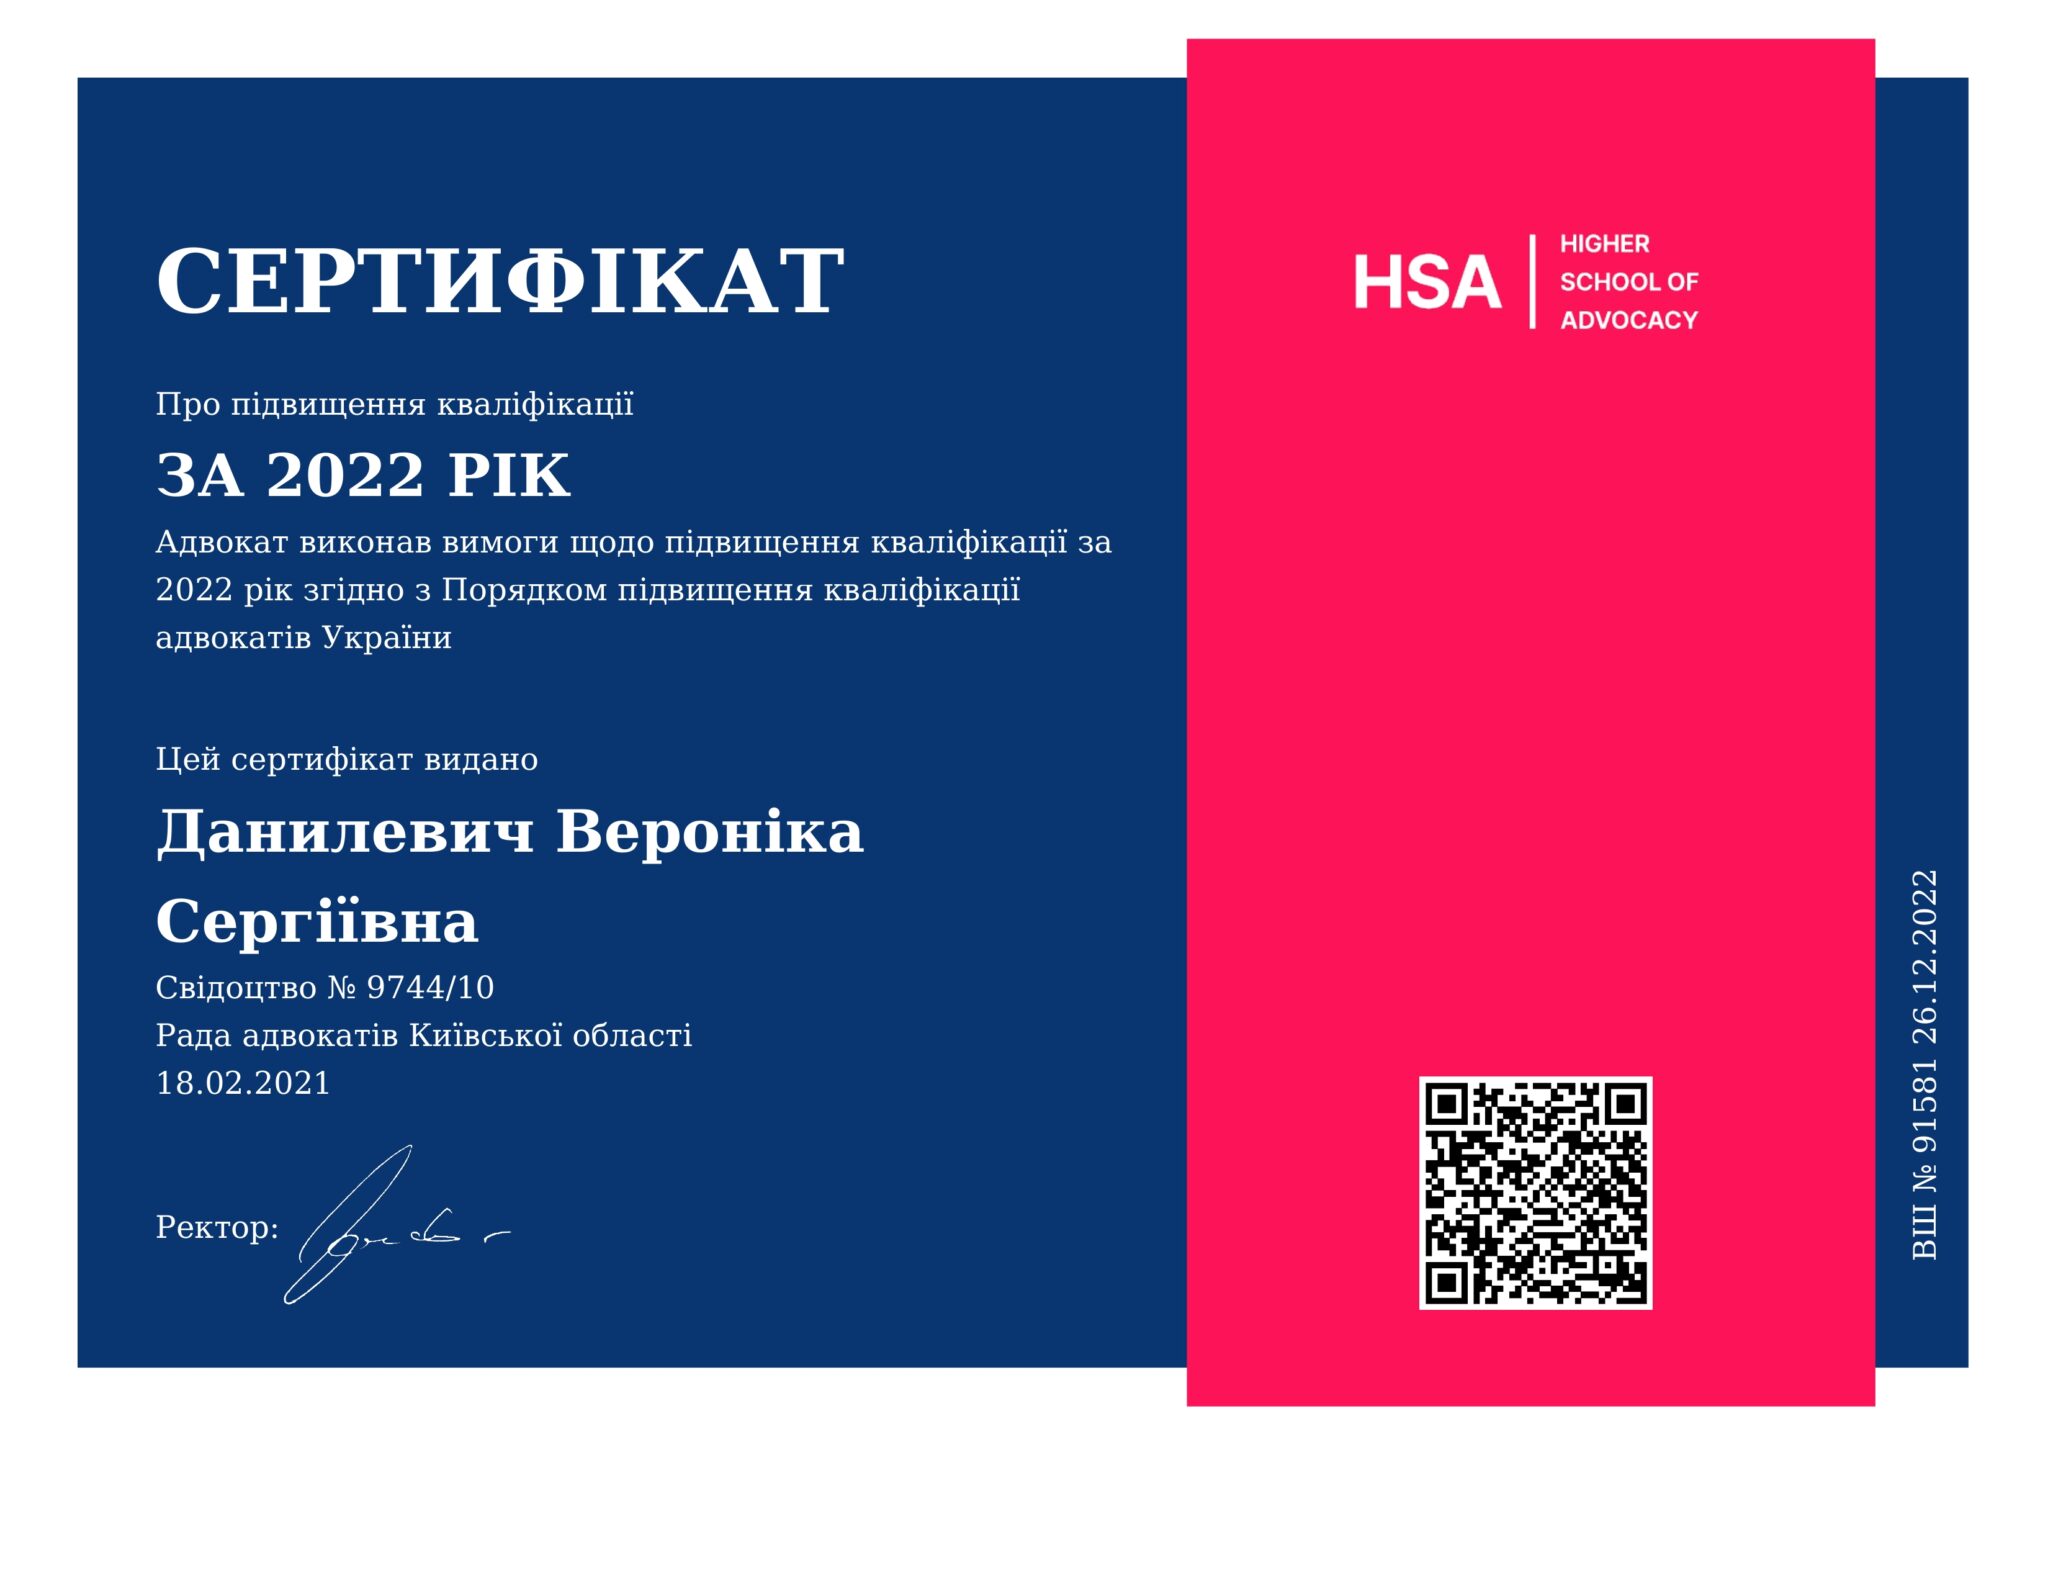 Сертифікат про підвищення кваліфікації адвоката Данилевич Вероніки Сергіївни за 2022 рік